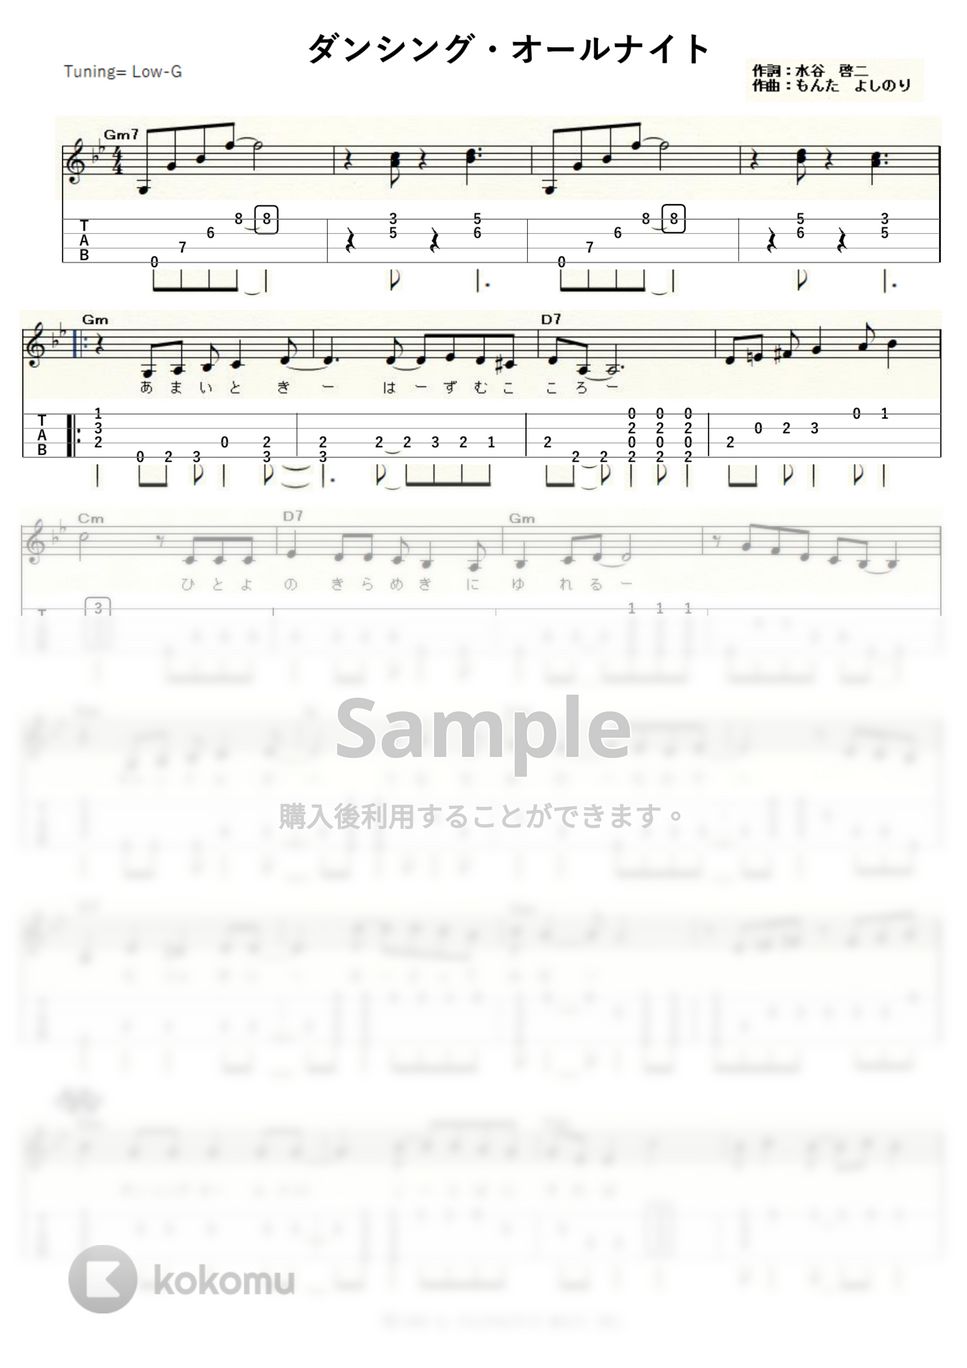 もんた＆ブラザーズ - ダンシング・オールナイト (Low-G) タブ + 五線譜 by ukulelepapa